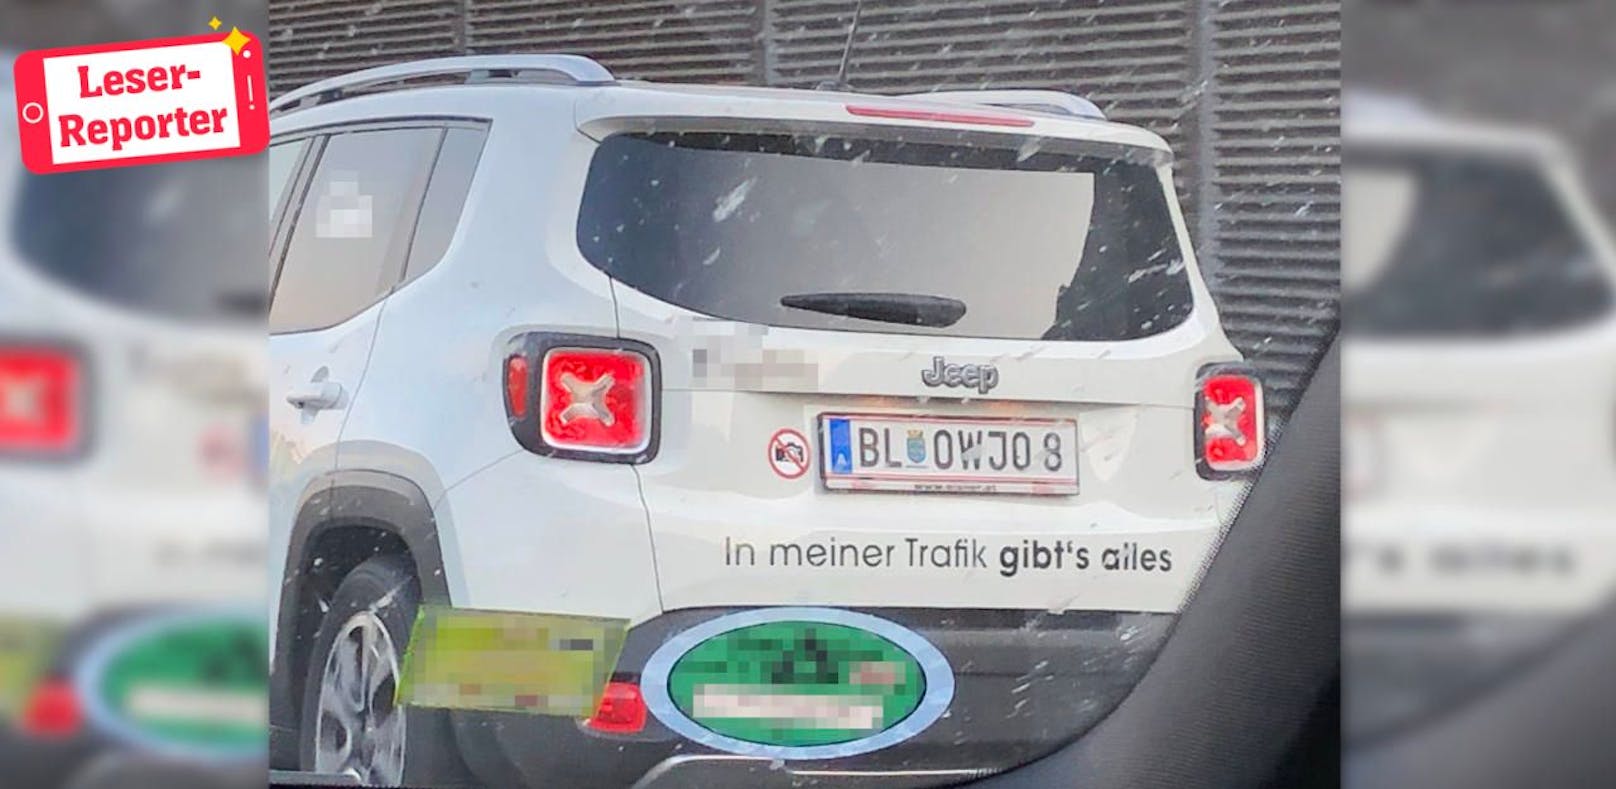 Auch in Österreich gibt es das &quot;BL-OWJO8&quot;-Taferl zu sehen. 